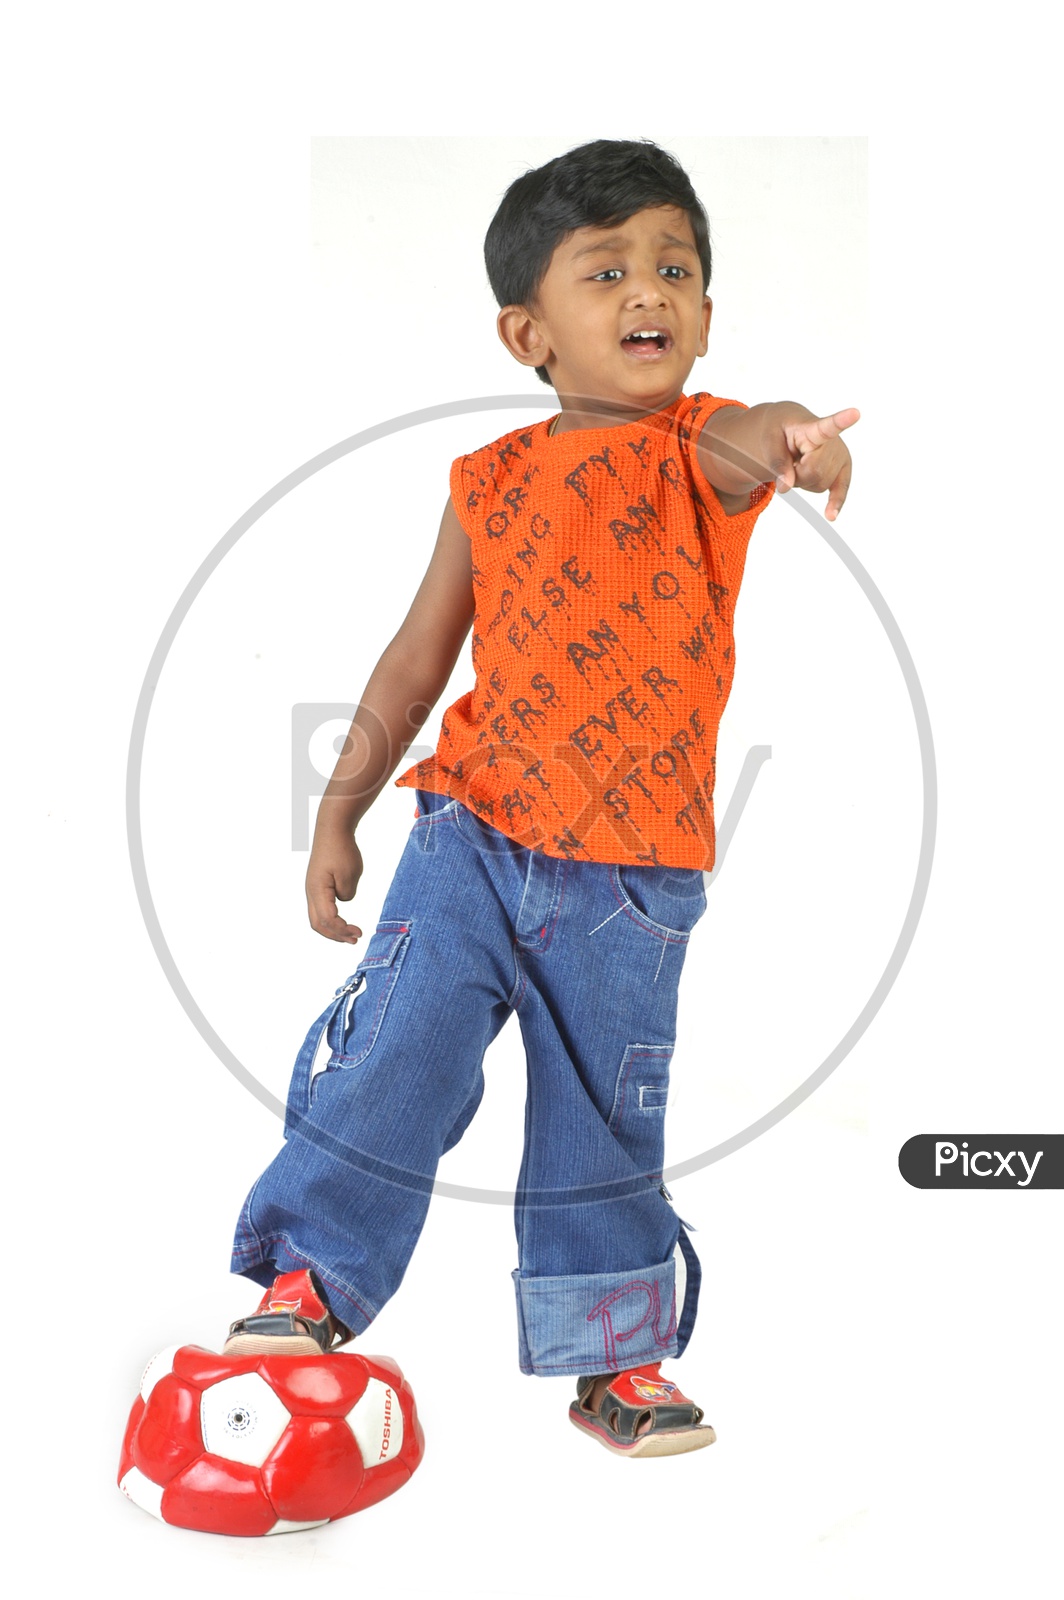 Indian boy wearing a sleeveless shirt